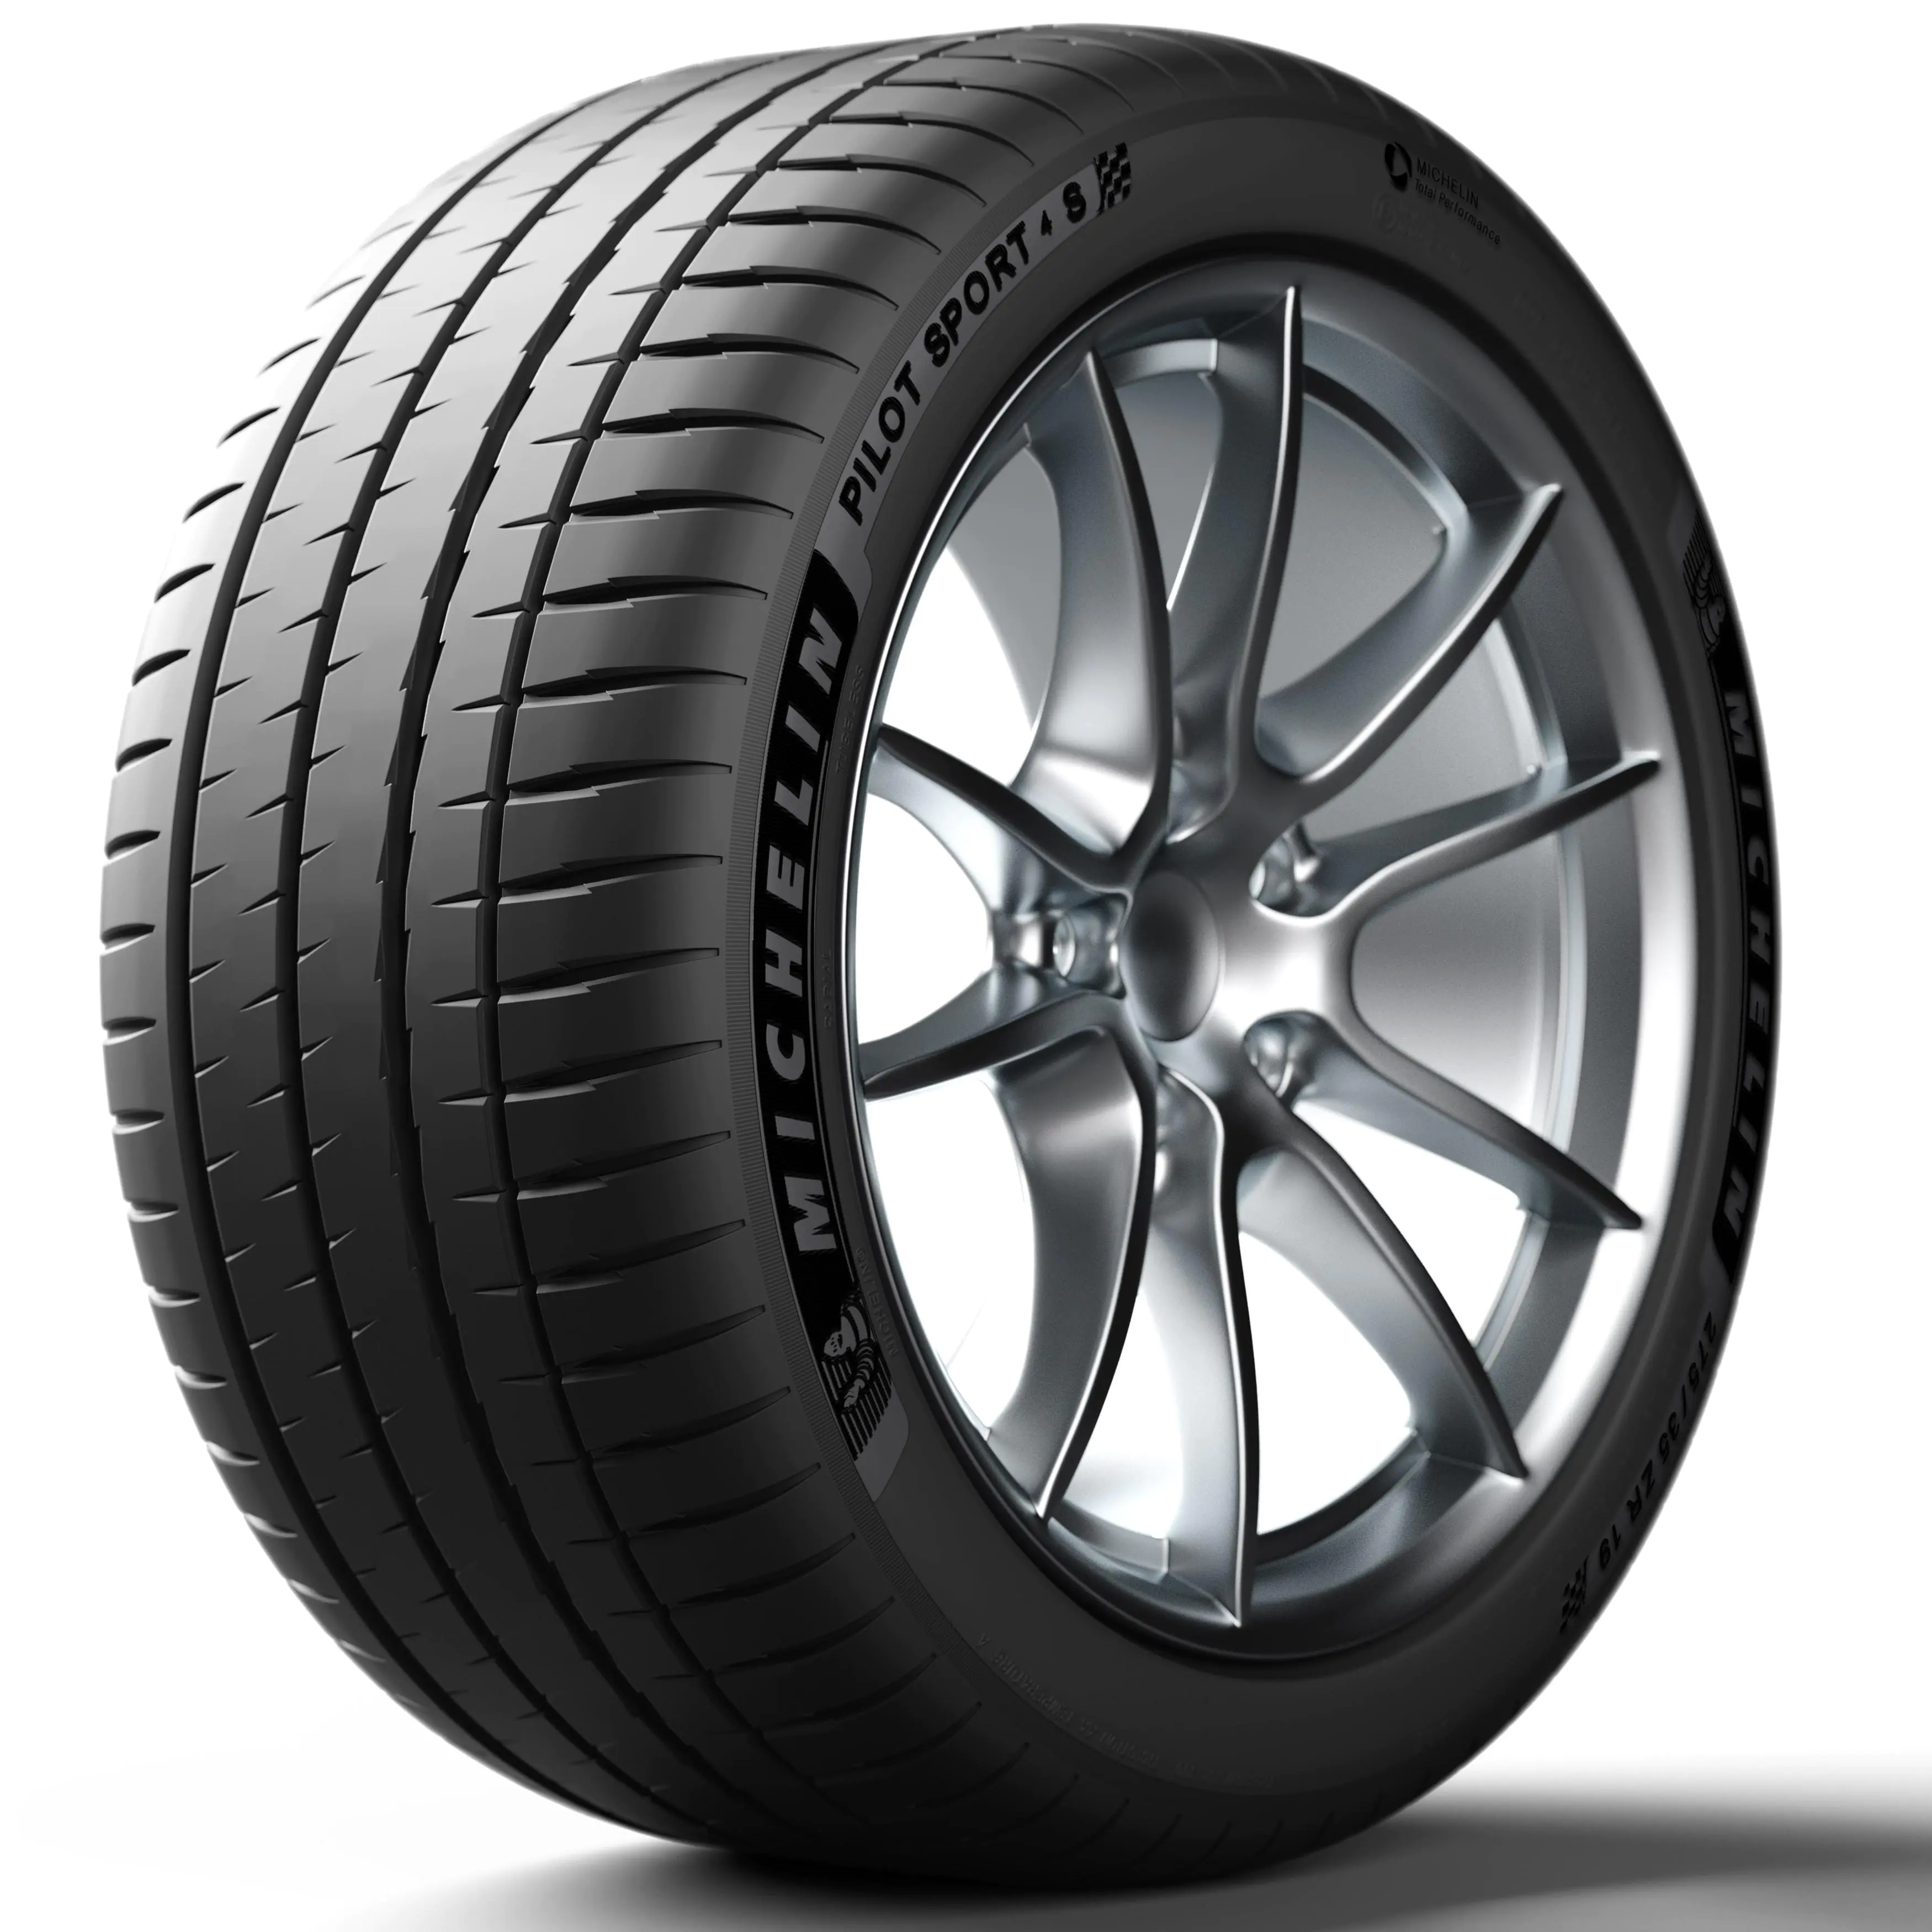 Michelin Michelin 245/40 R20 99Y P.SPORT 4 S XL pneumatici nuovi Estivo 